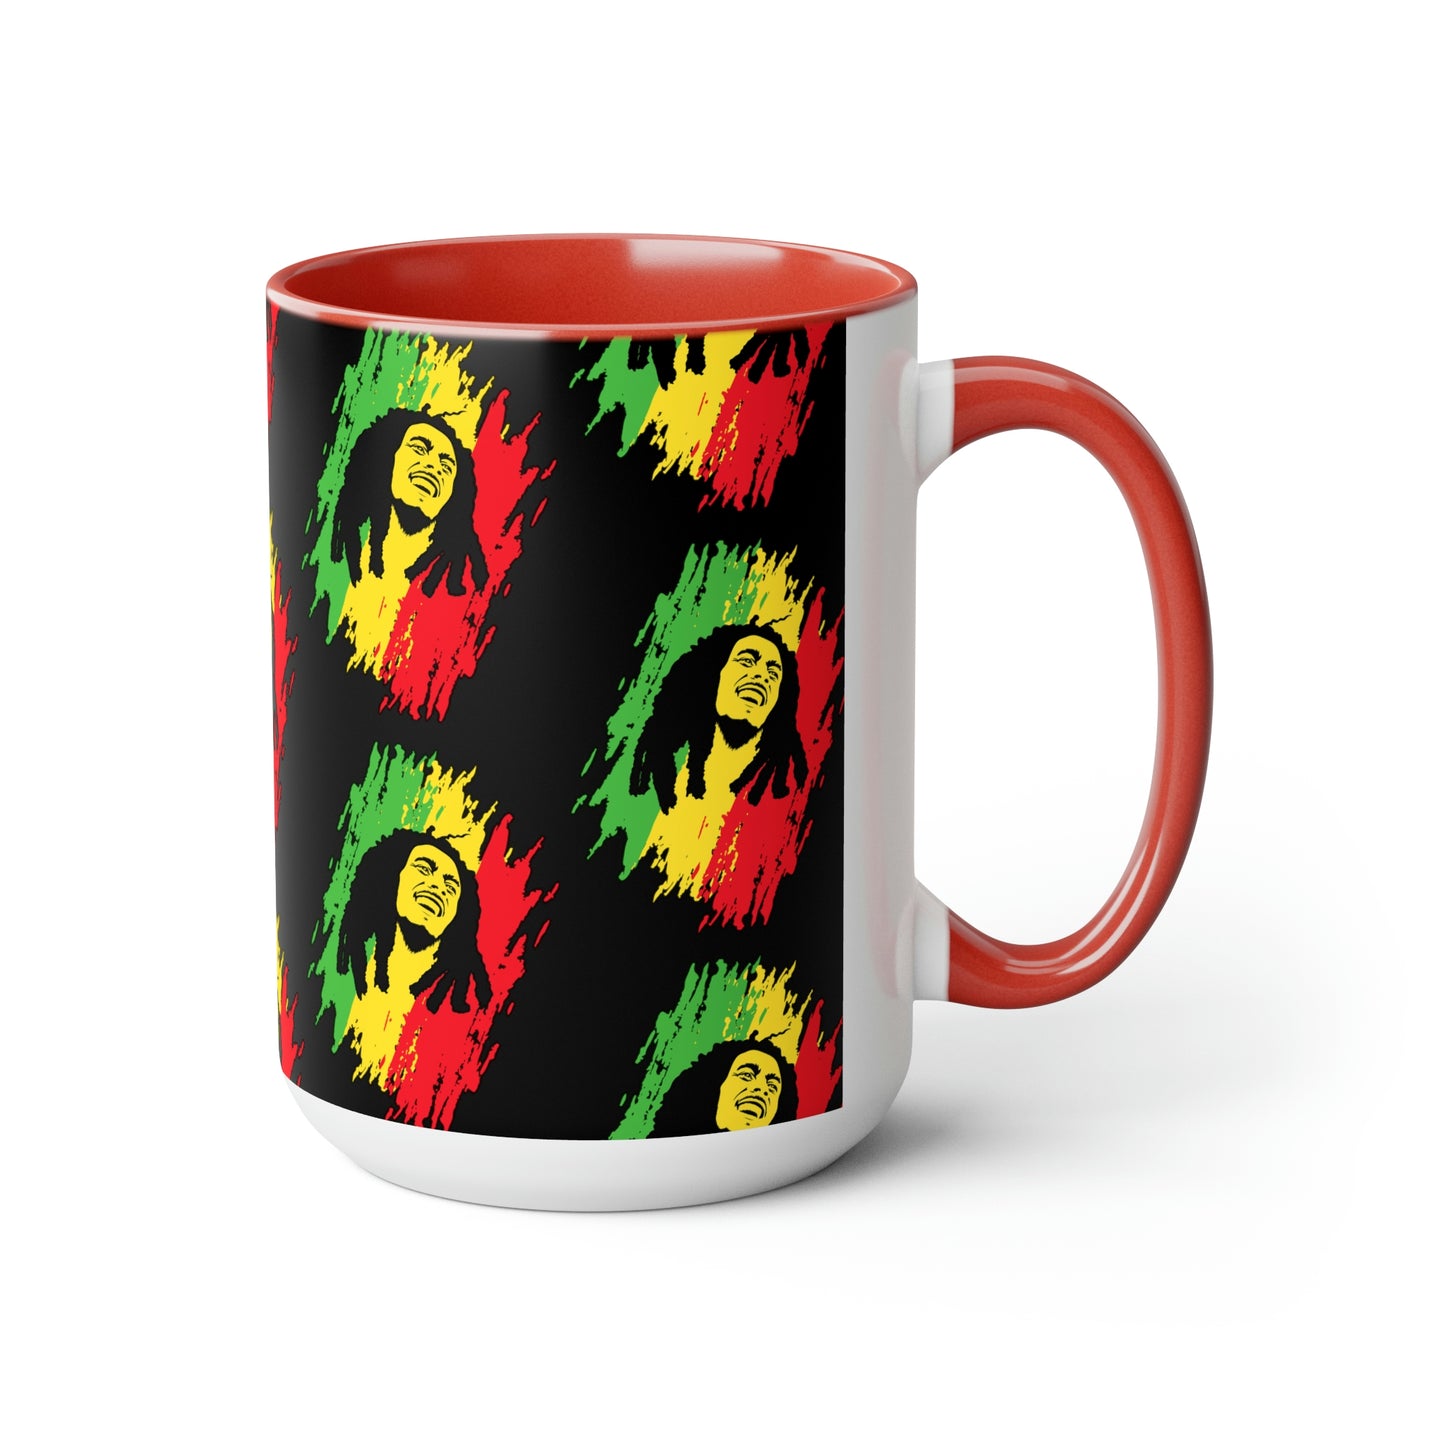 Bob Marley Rasta Man Accented Coffee Mugs, 15oz